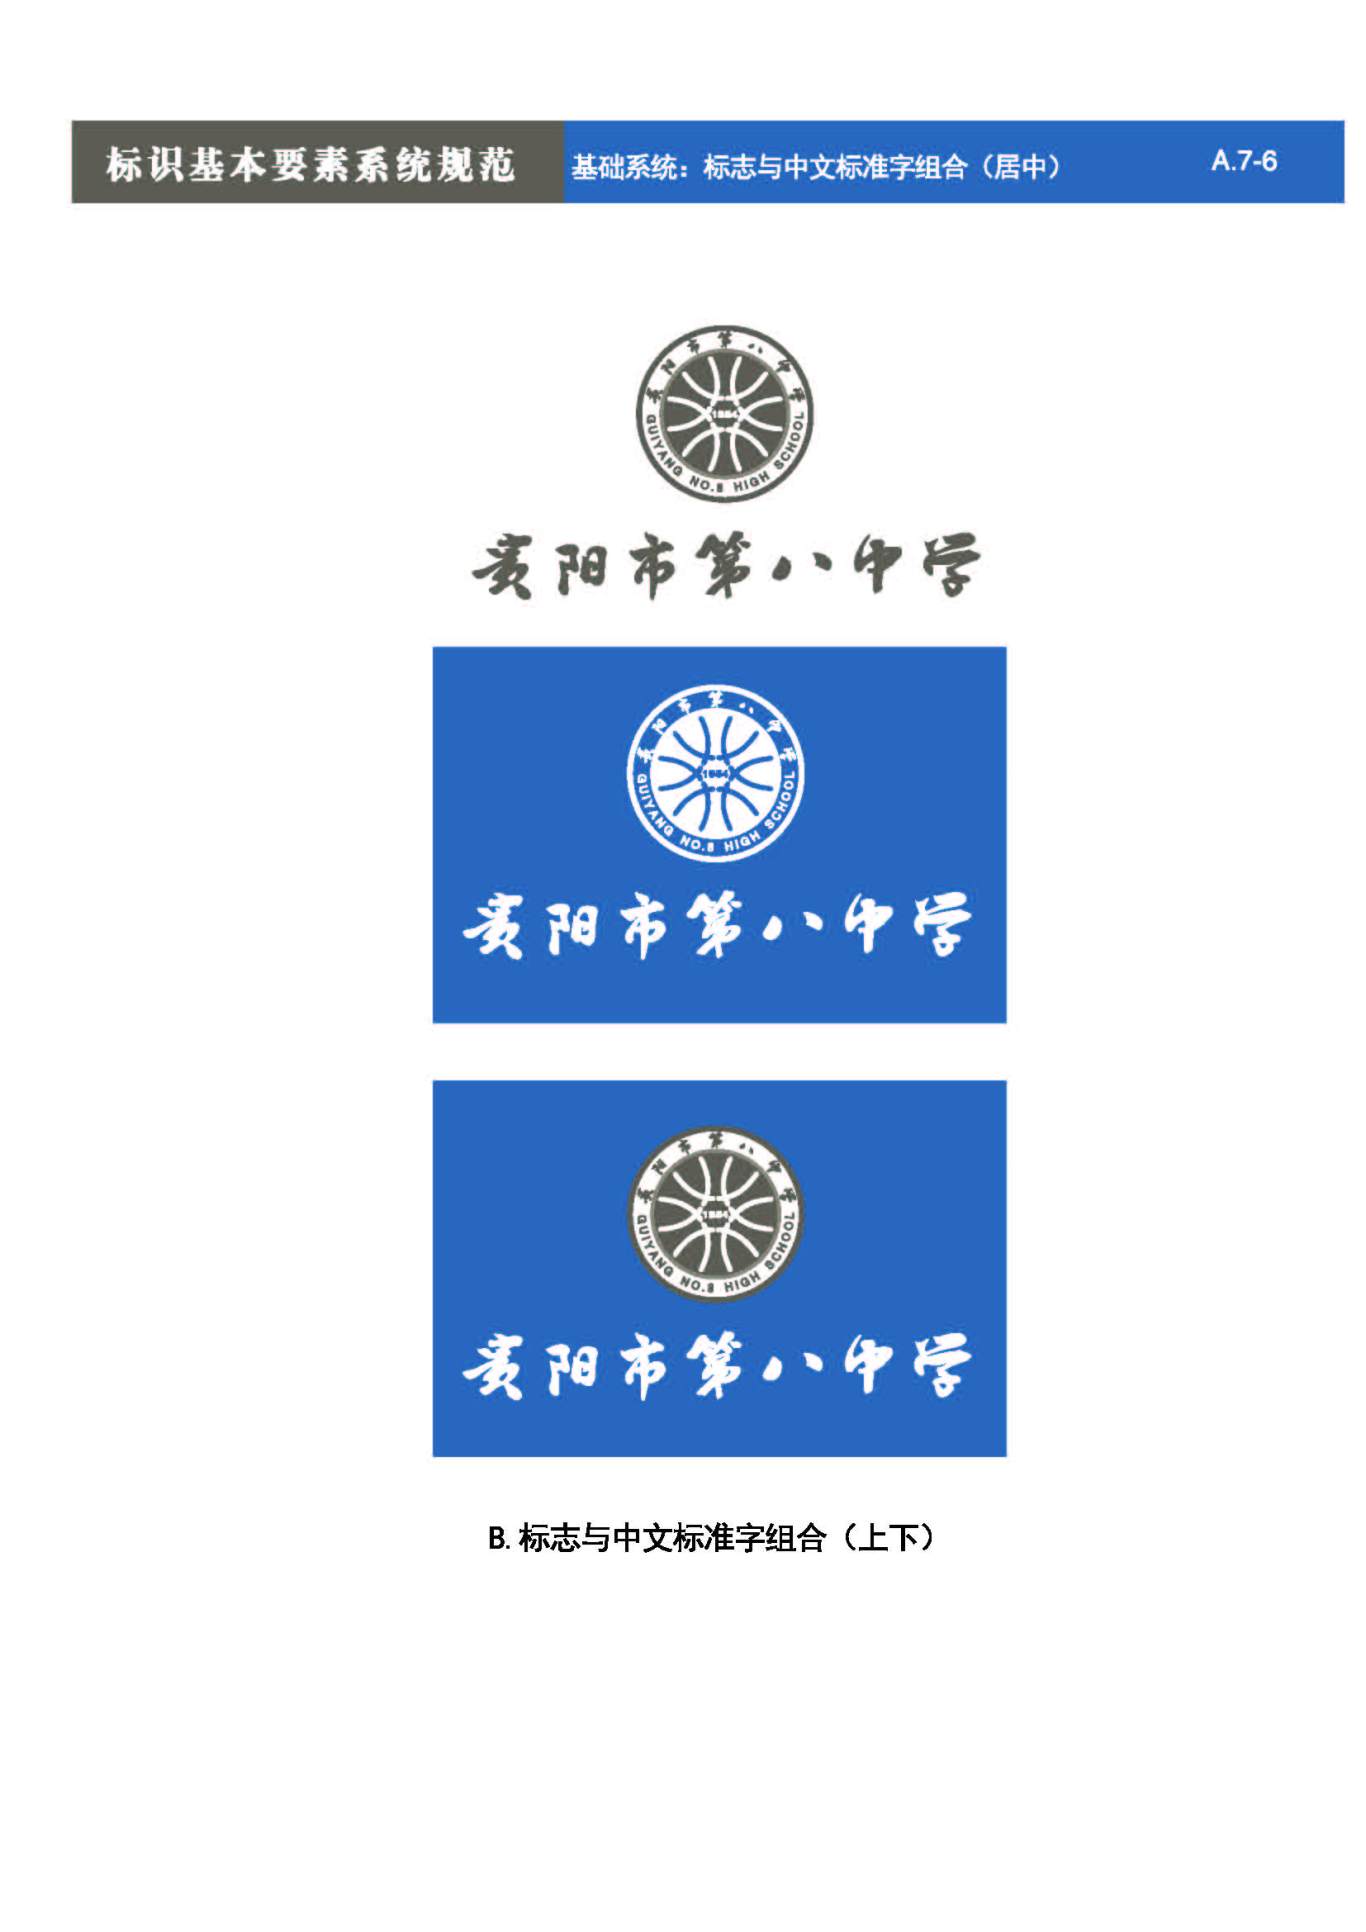 贵阳第八中学Logo、VIS设计图27